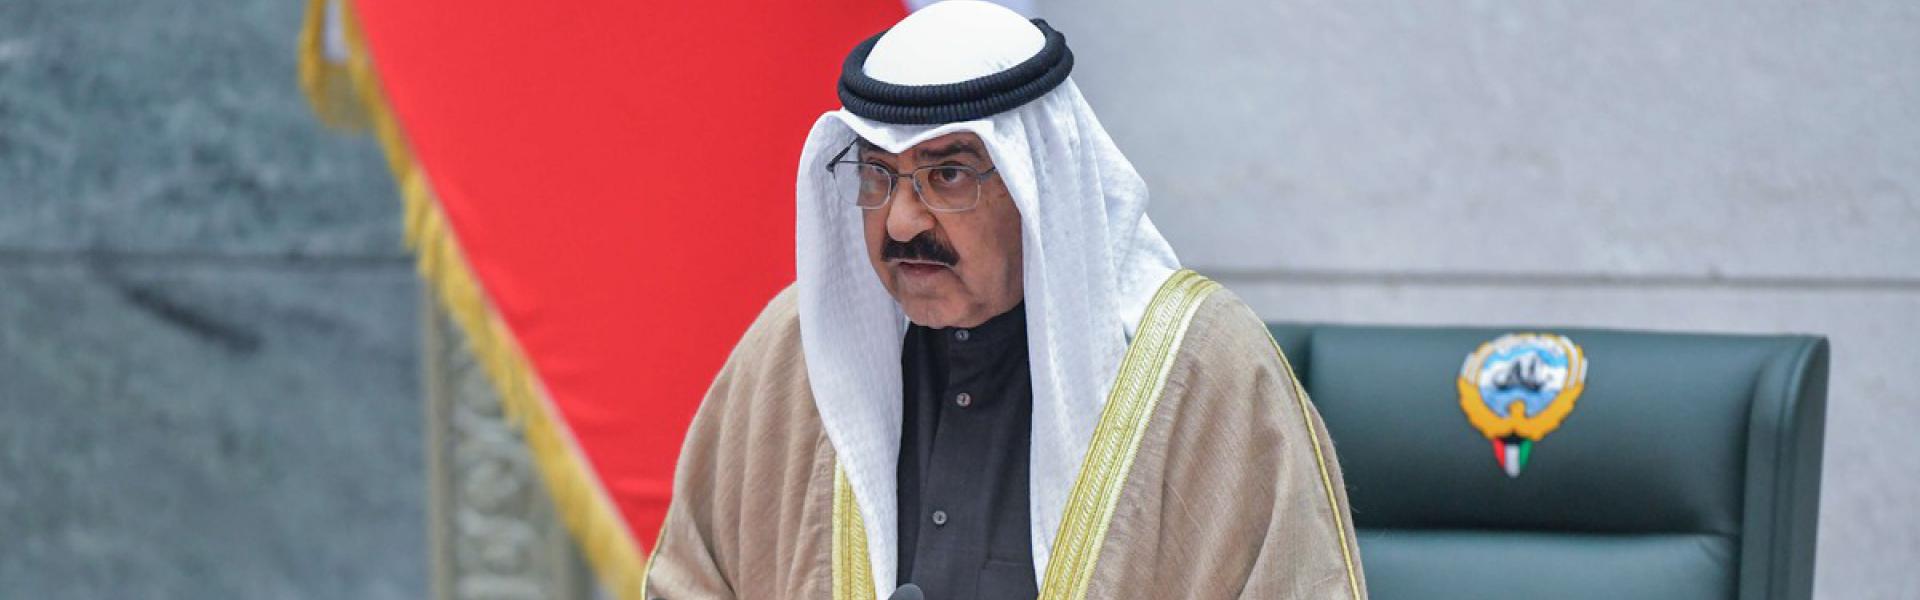 أمير الكويت يؤكد أنه لن يسمح إطلاقا بأن تستغل الديمقراطية لتحطيم الدولة